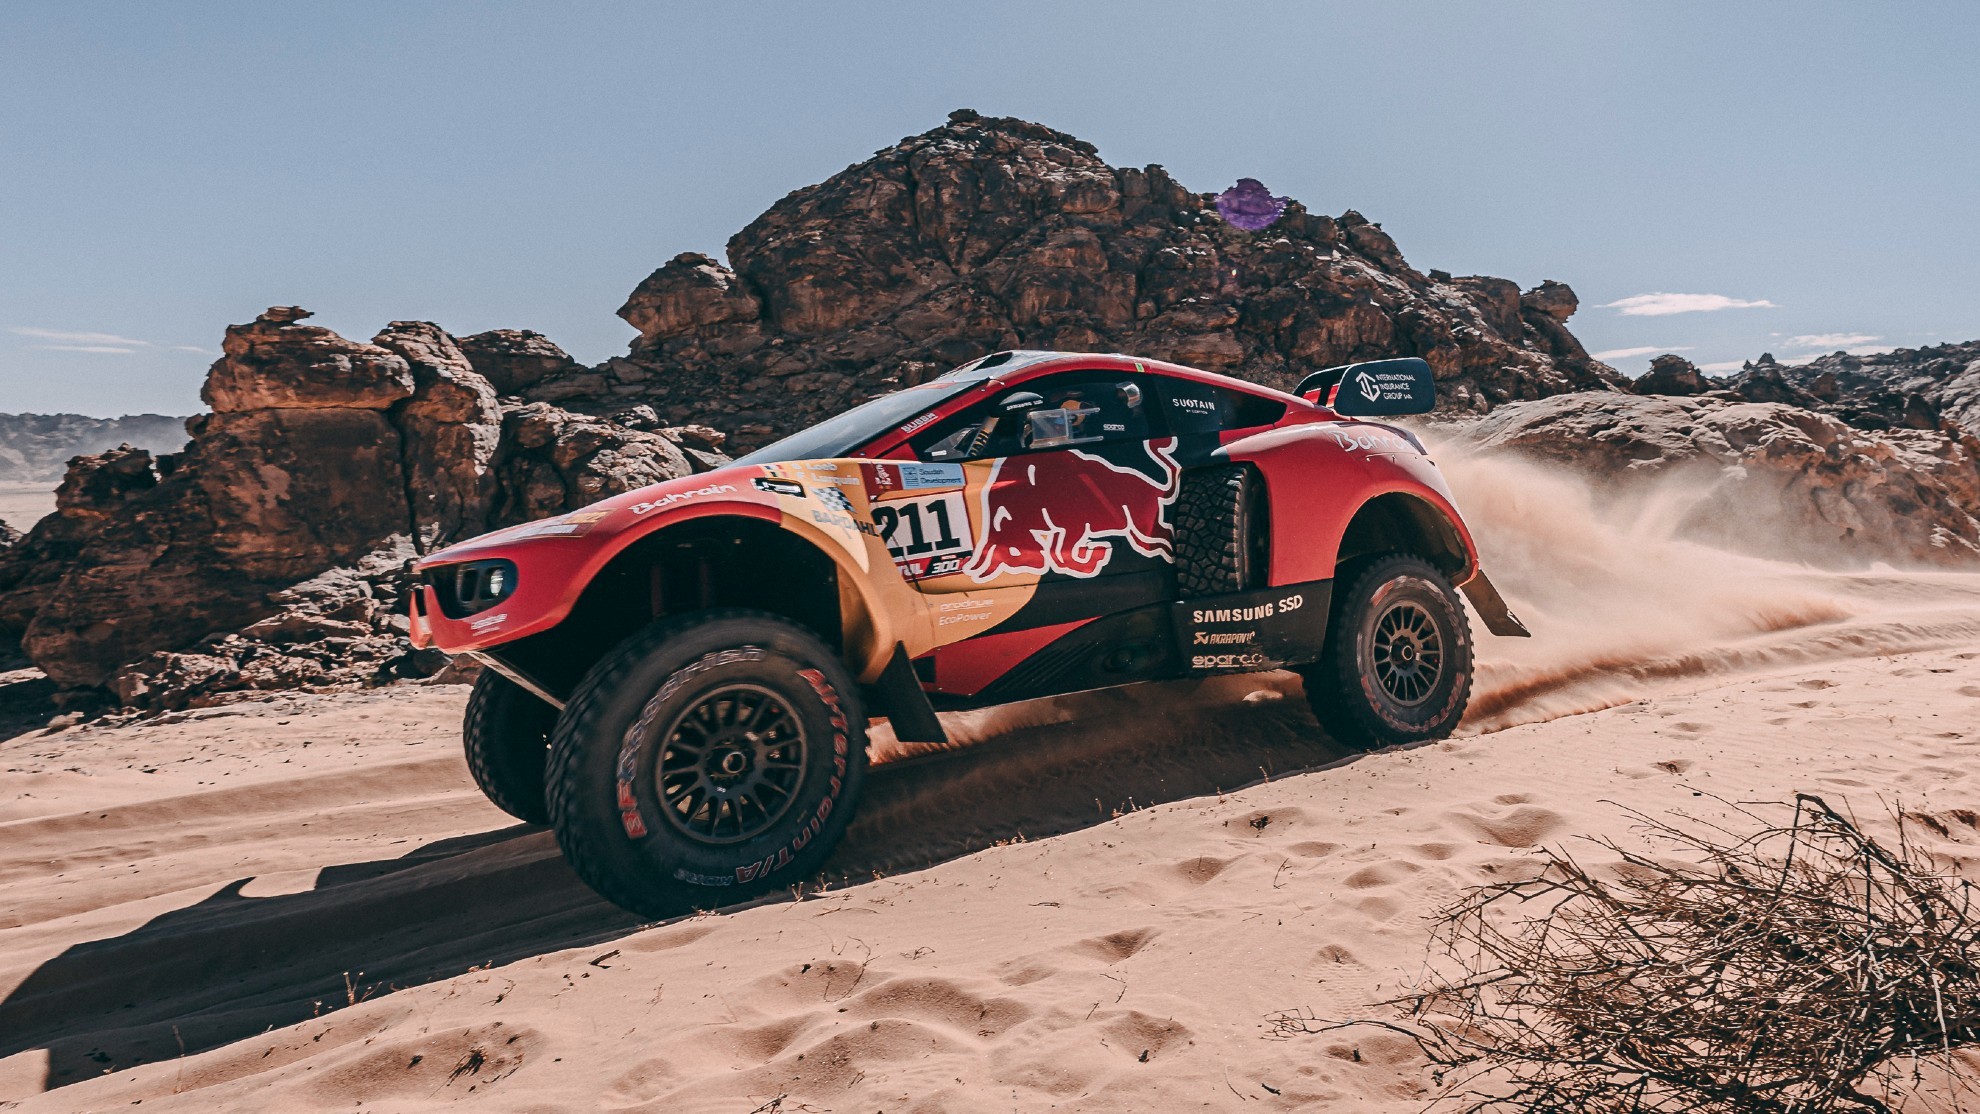 Abu Dhabi Desert Challenge - Mundial W2RC - Mundial de rally-raid - Sebastien Loeb - BRX